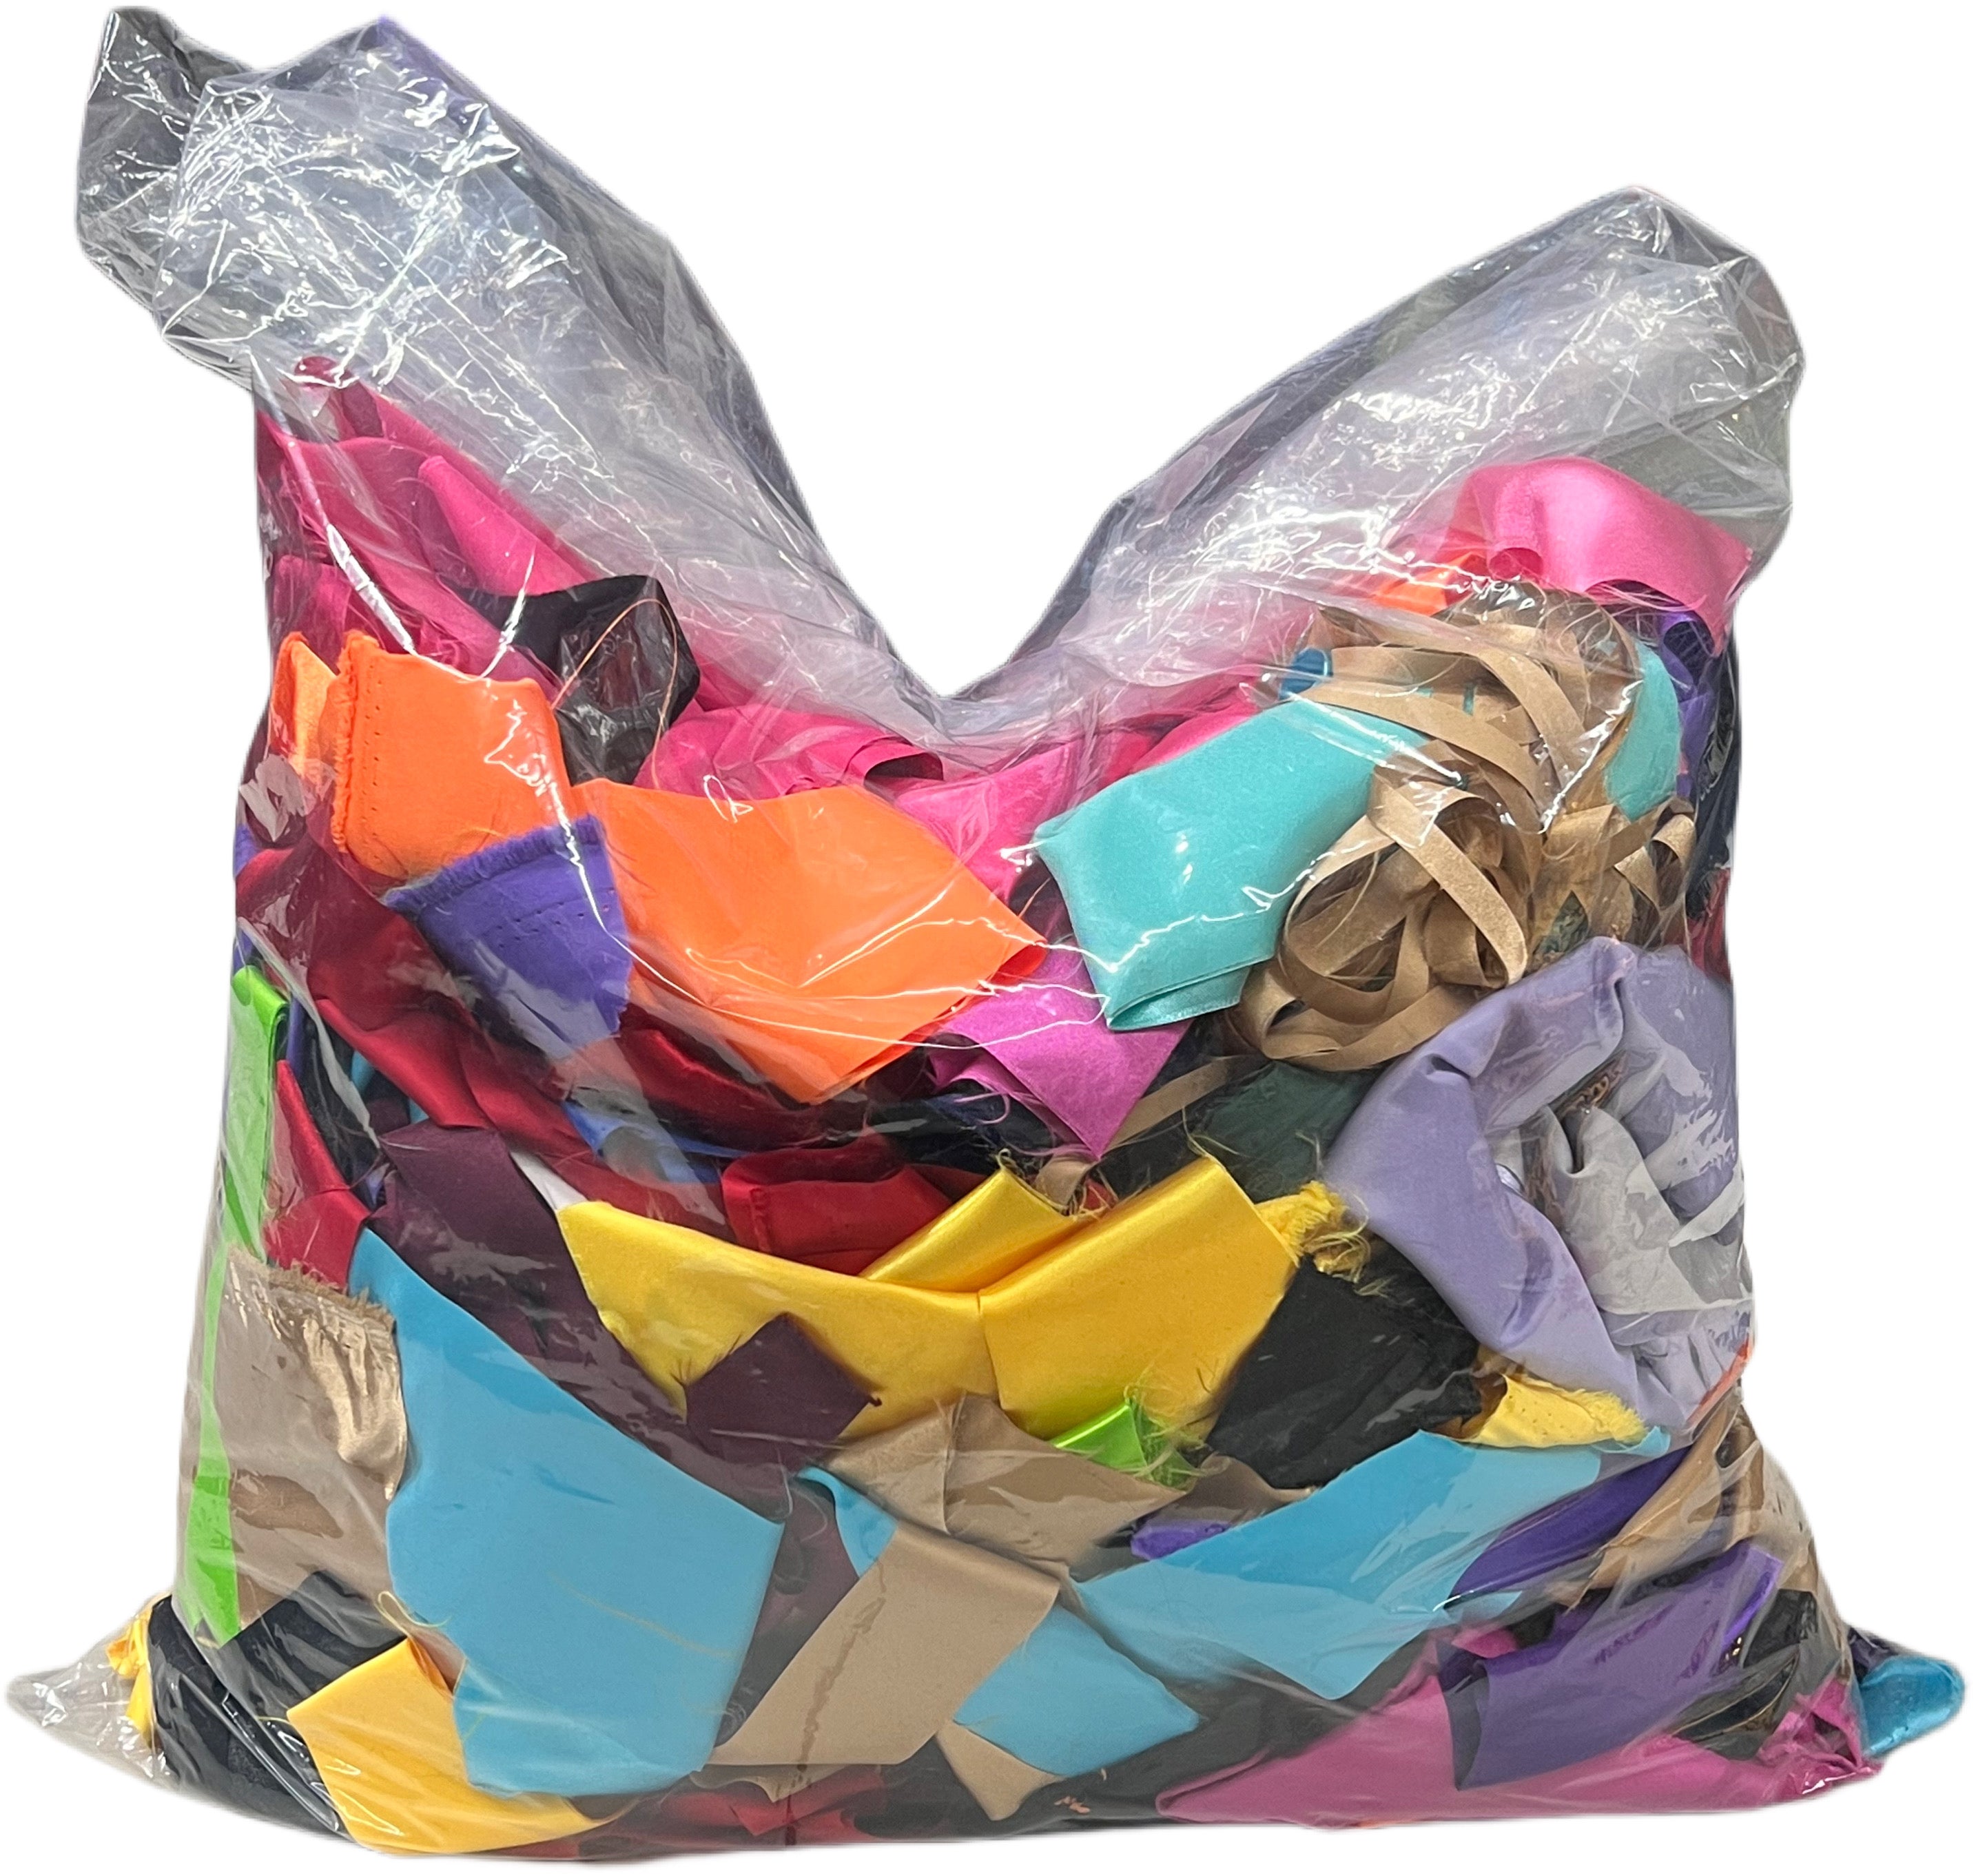 Bag of Scraps (5lbs)